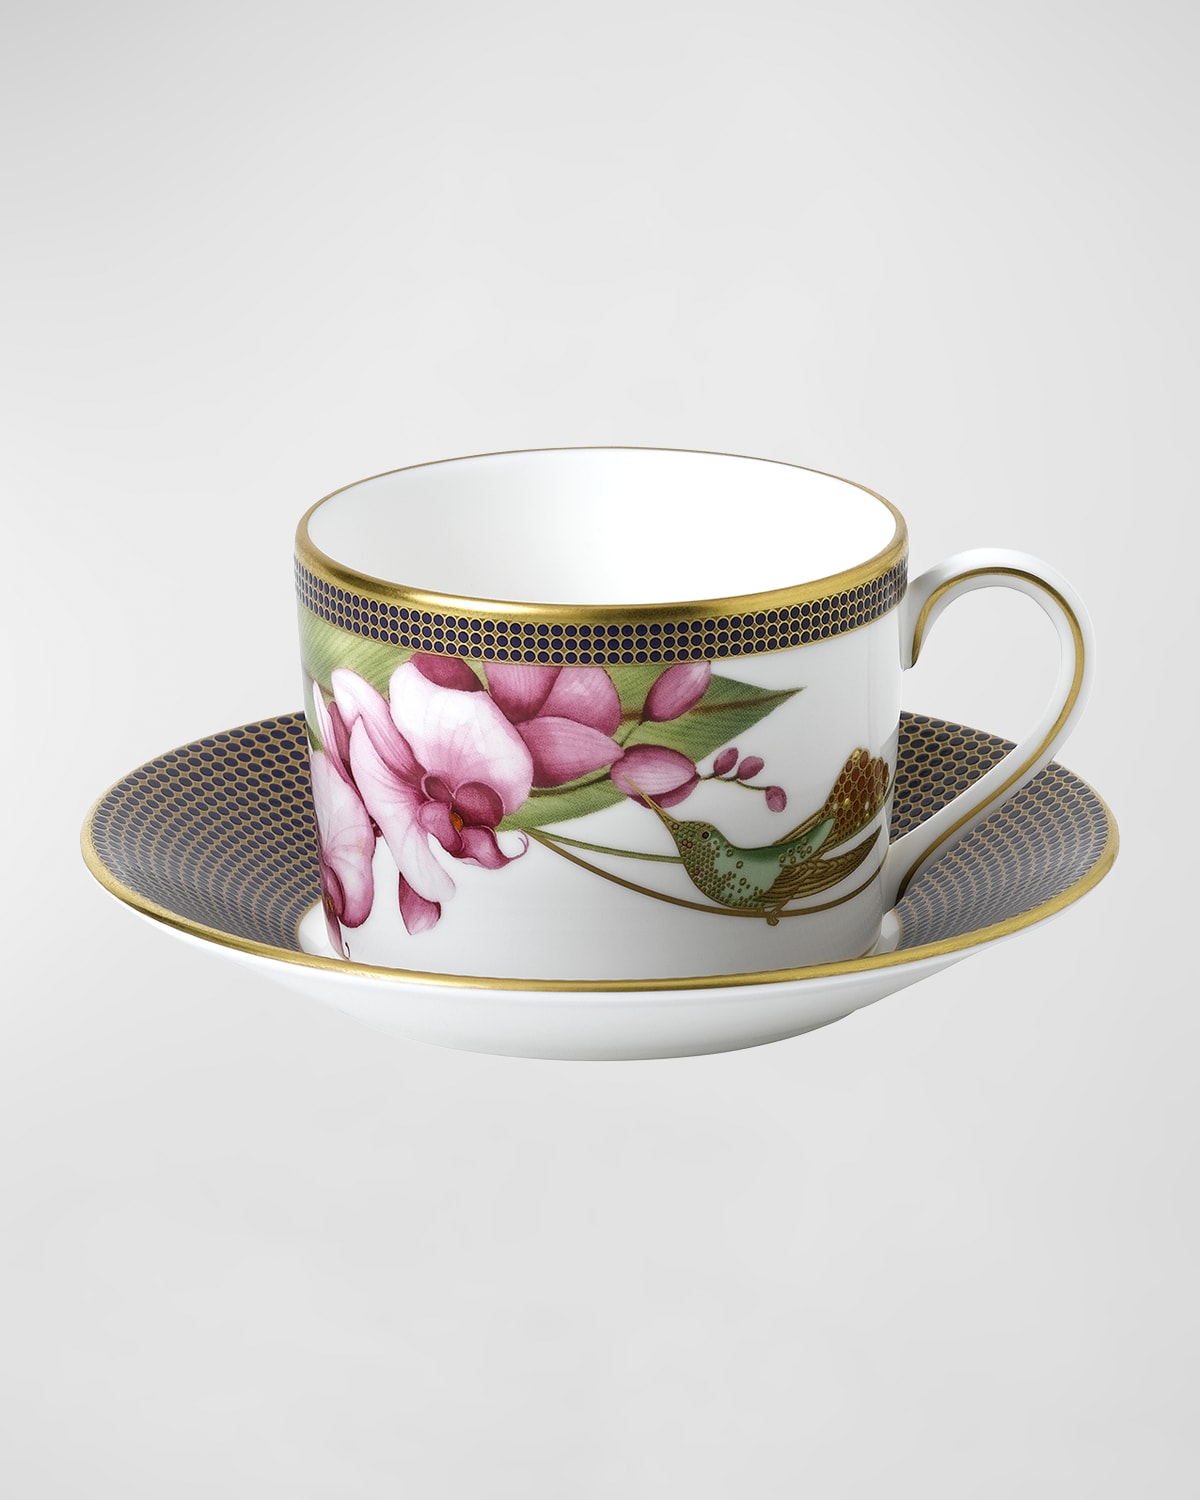 Hummingbird Teacup & Saucer Set